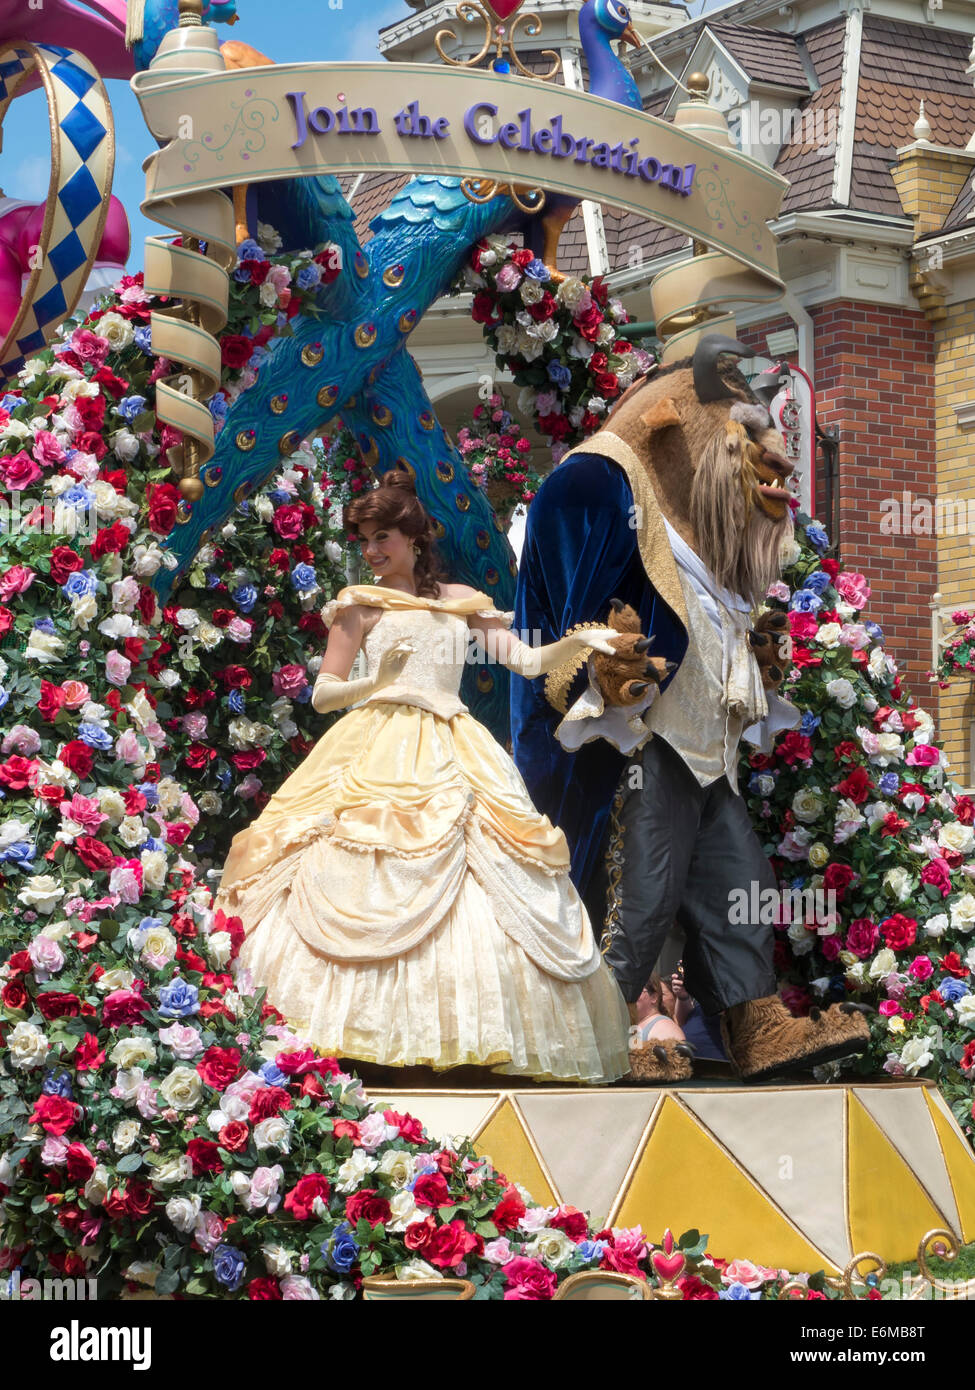 Belle et la Bête flottent dans la Parade à Disney's Magic Kingdom Banque D'Images